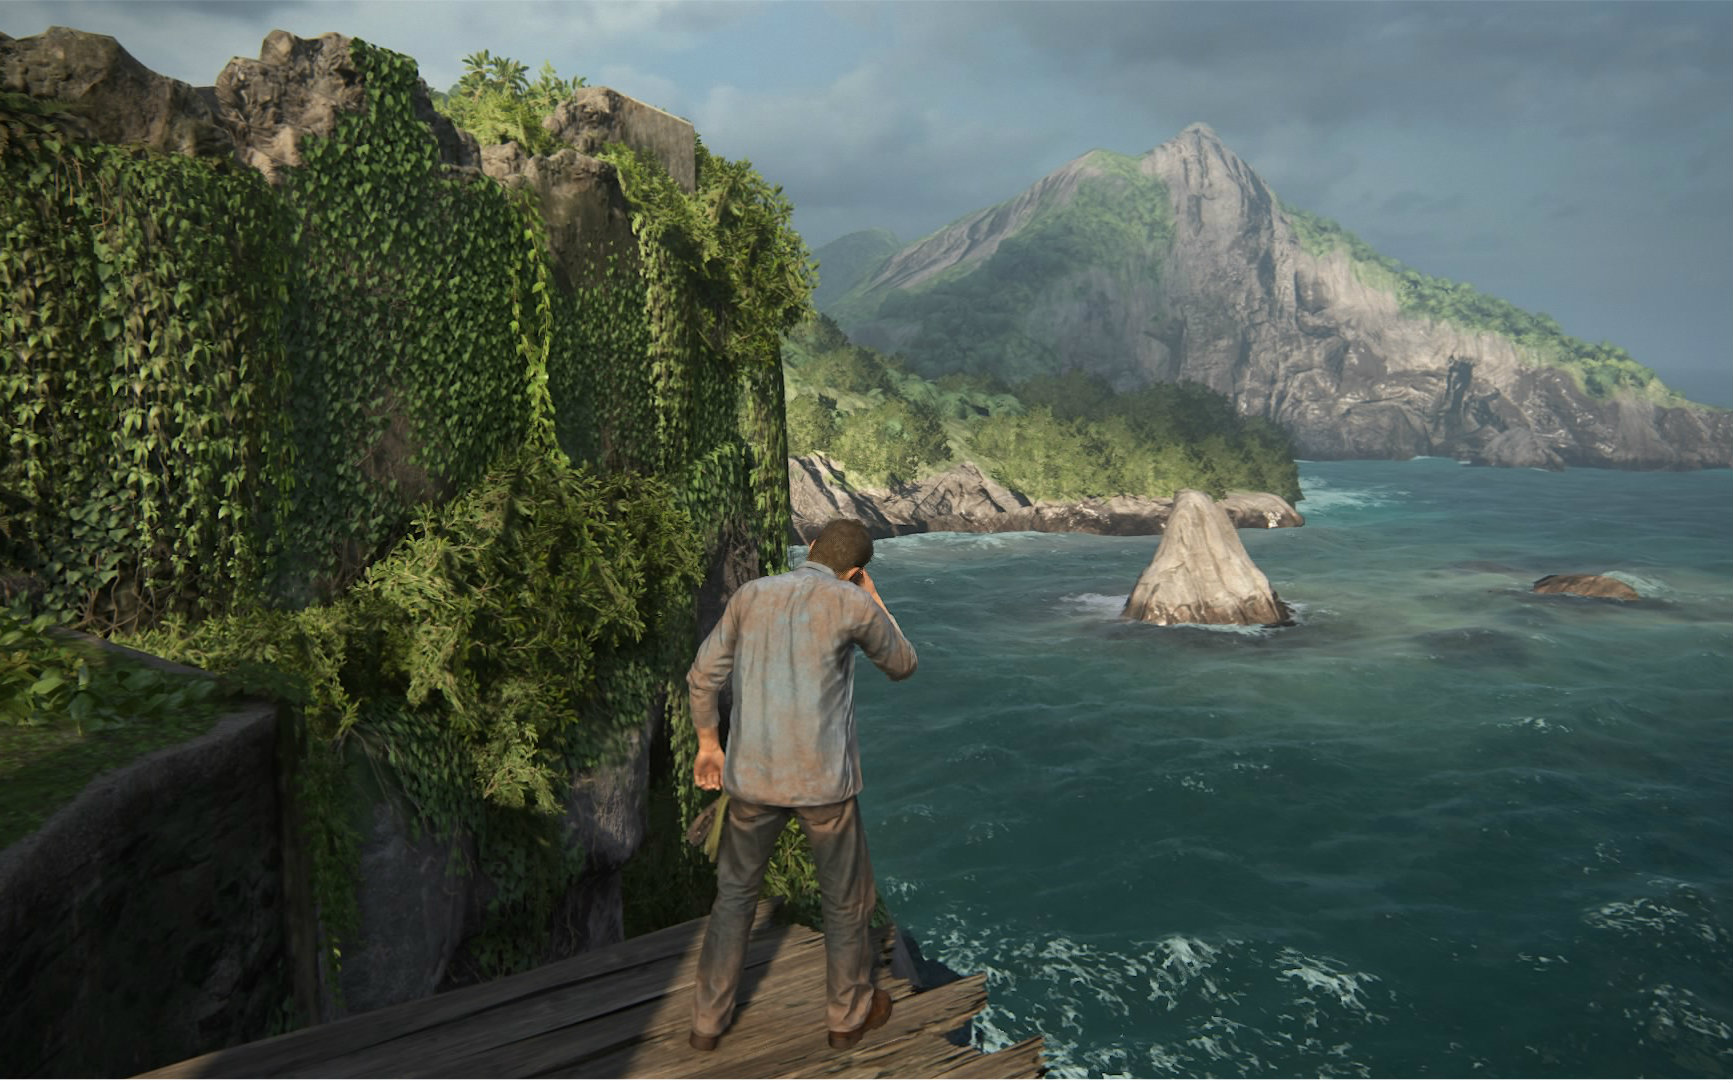 《神秘海域4》动态主题曝光 打造超唯美梦境风格-游戏早知道